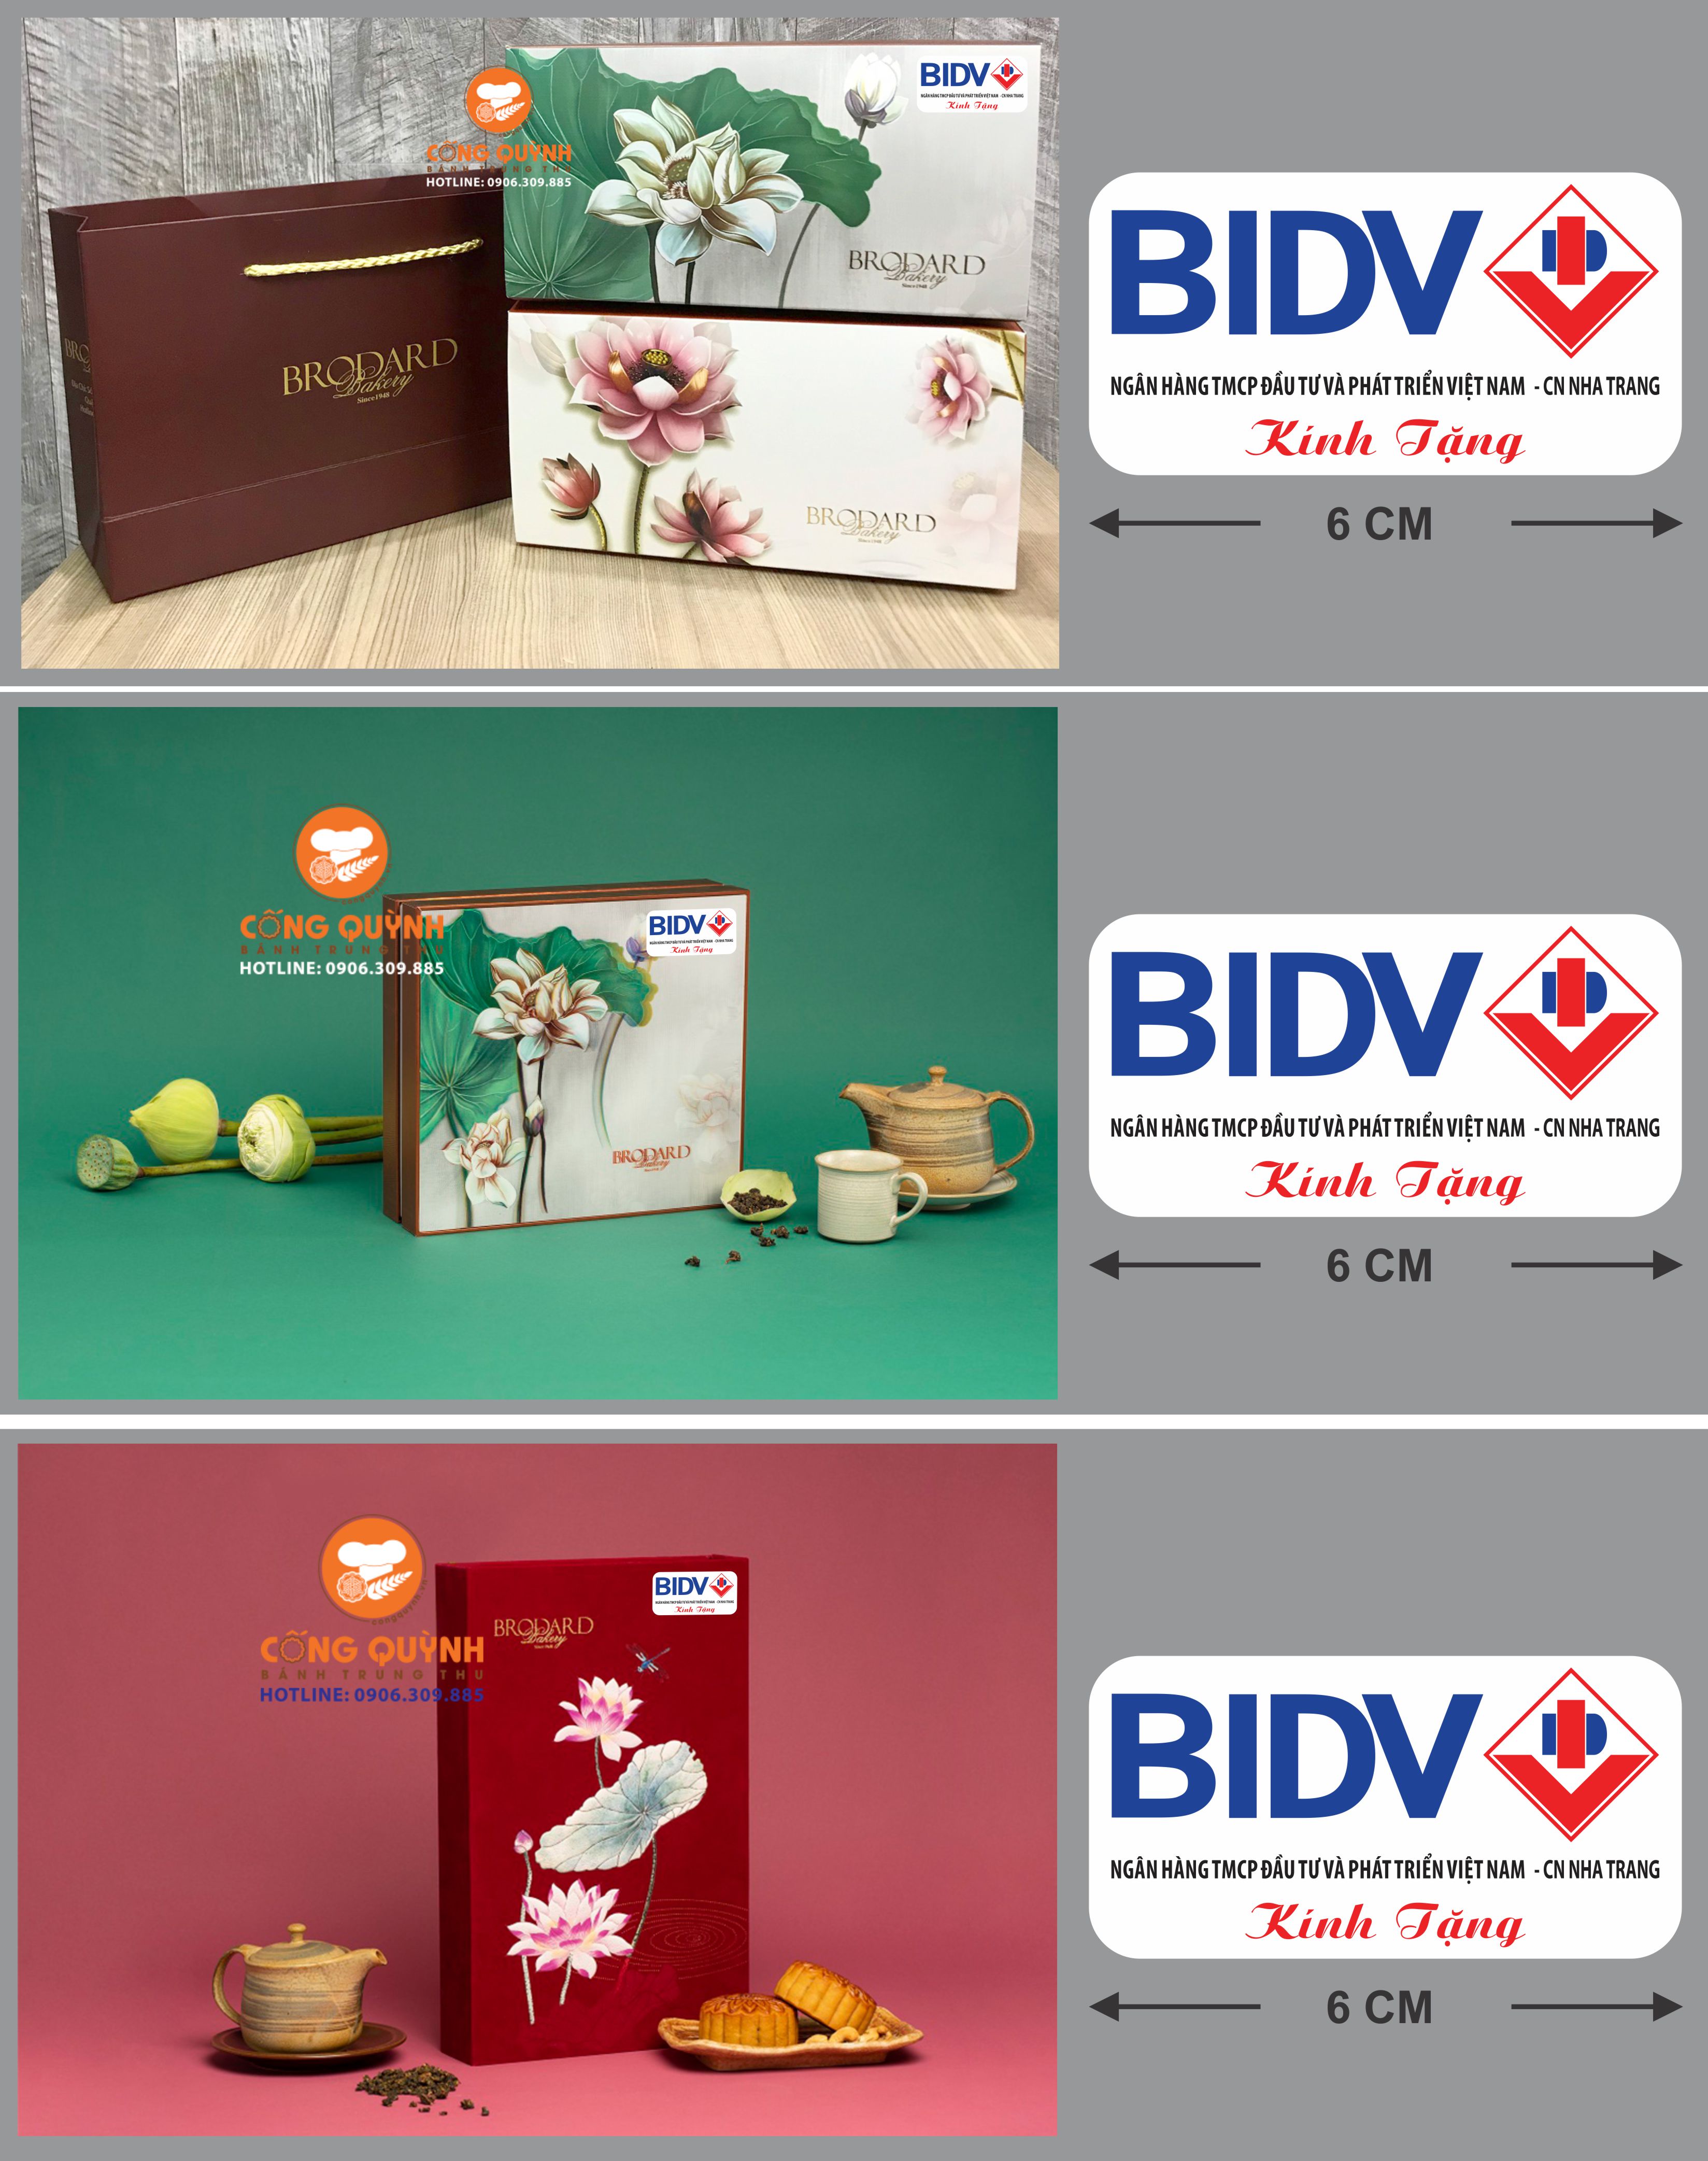 đơn hàng in logo của bidv